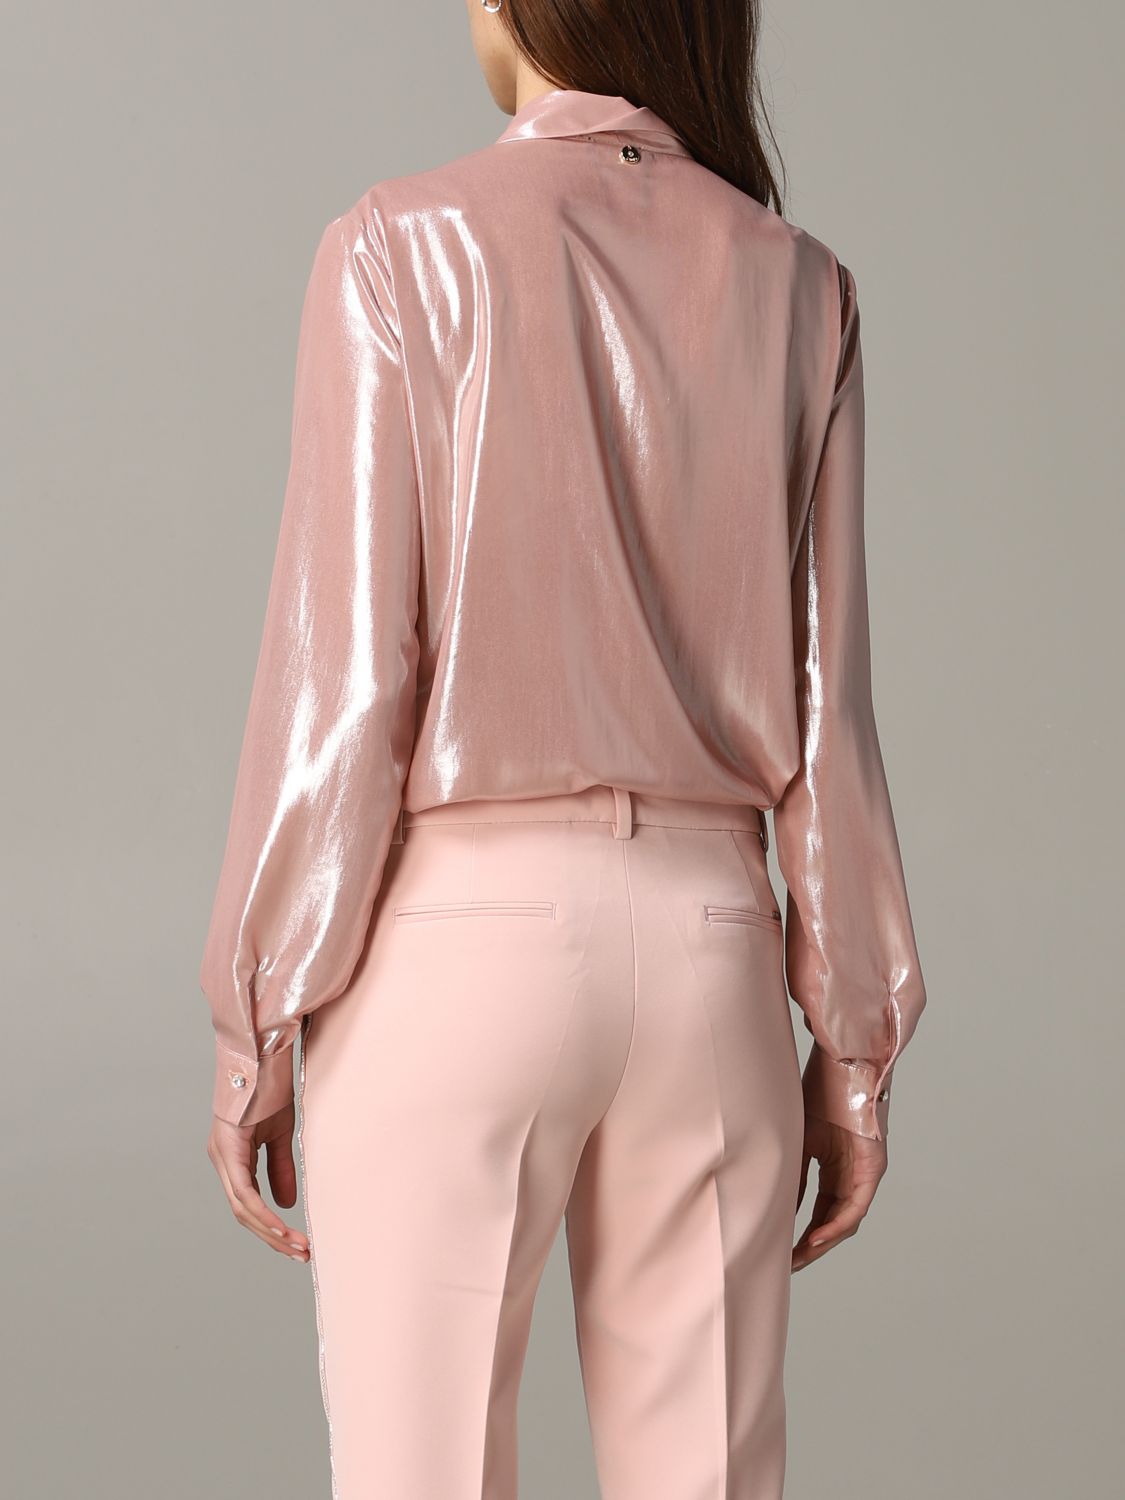 Liu Jo Outlet: shirt in metallic fabric - Blush Pink | Liu Jo